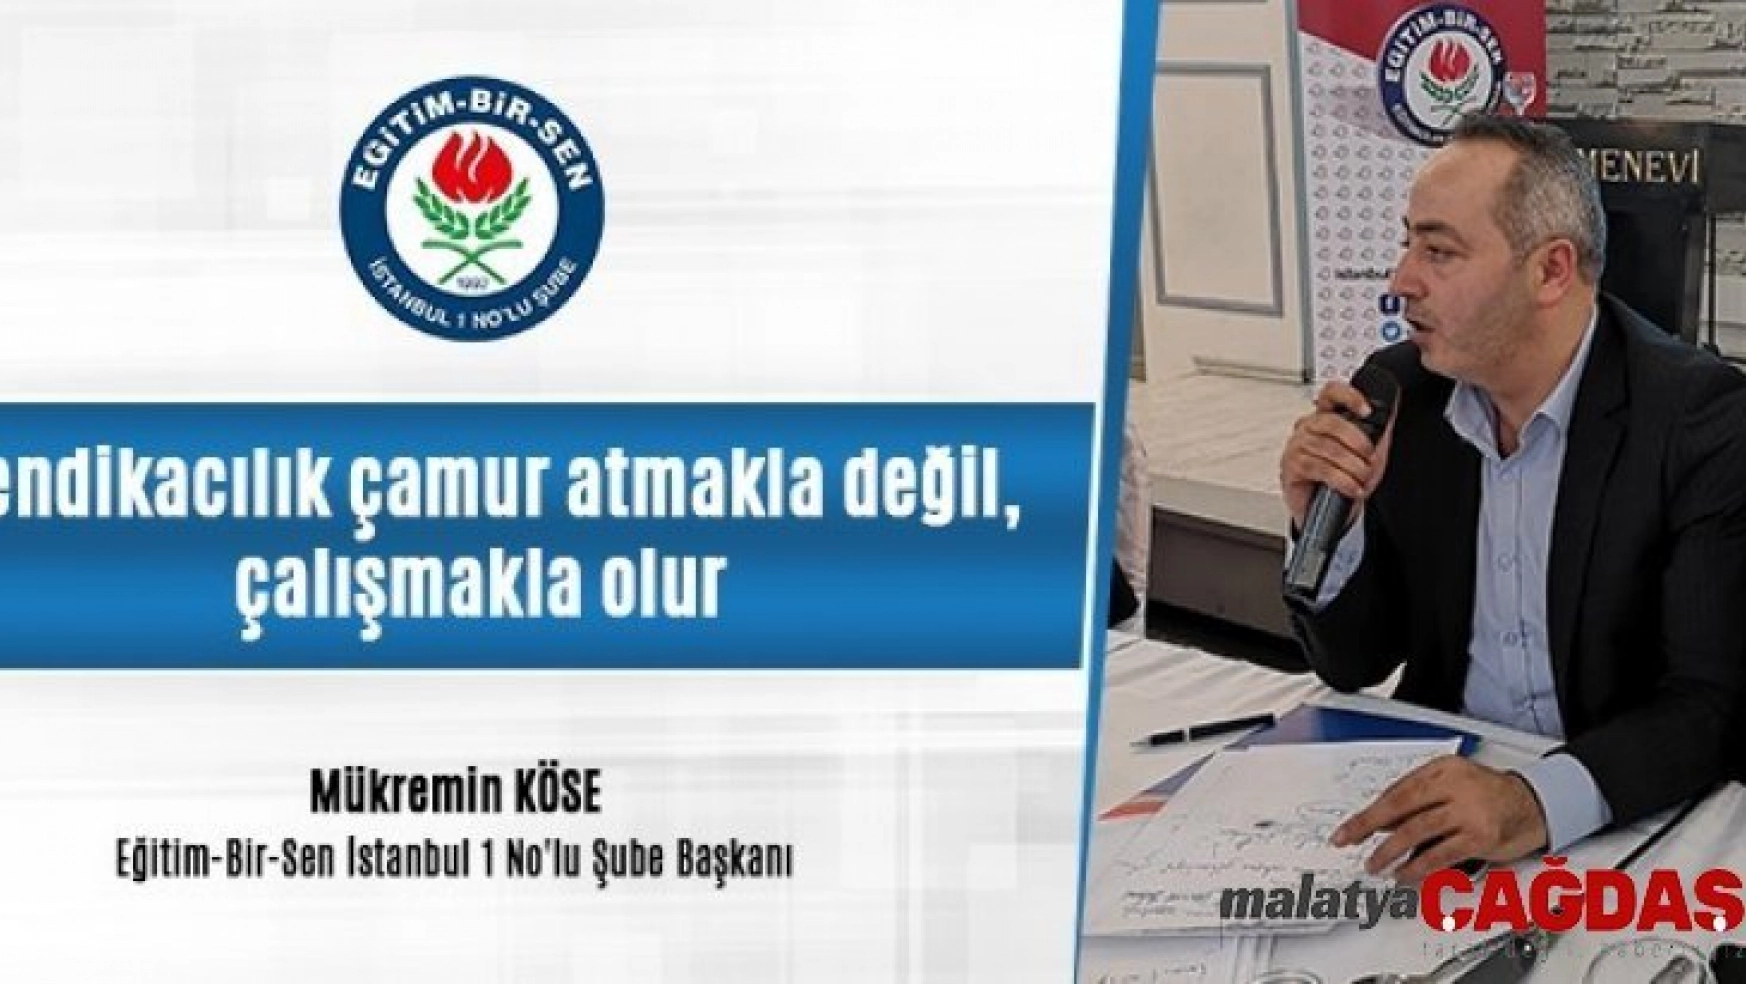 Eğitim-Bir-Sen İstanbul 1 No'lu Şube Başkanı Köse: 'Sendikacılık çamur atmakla değil, çalışmakla olur'